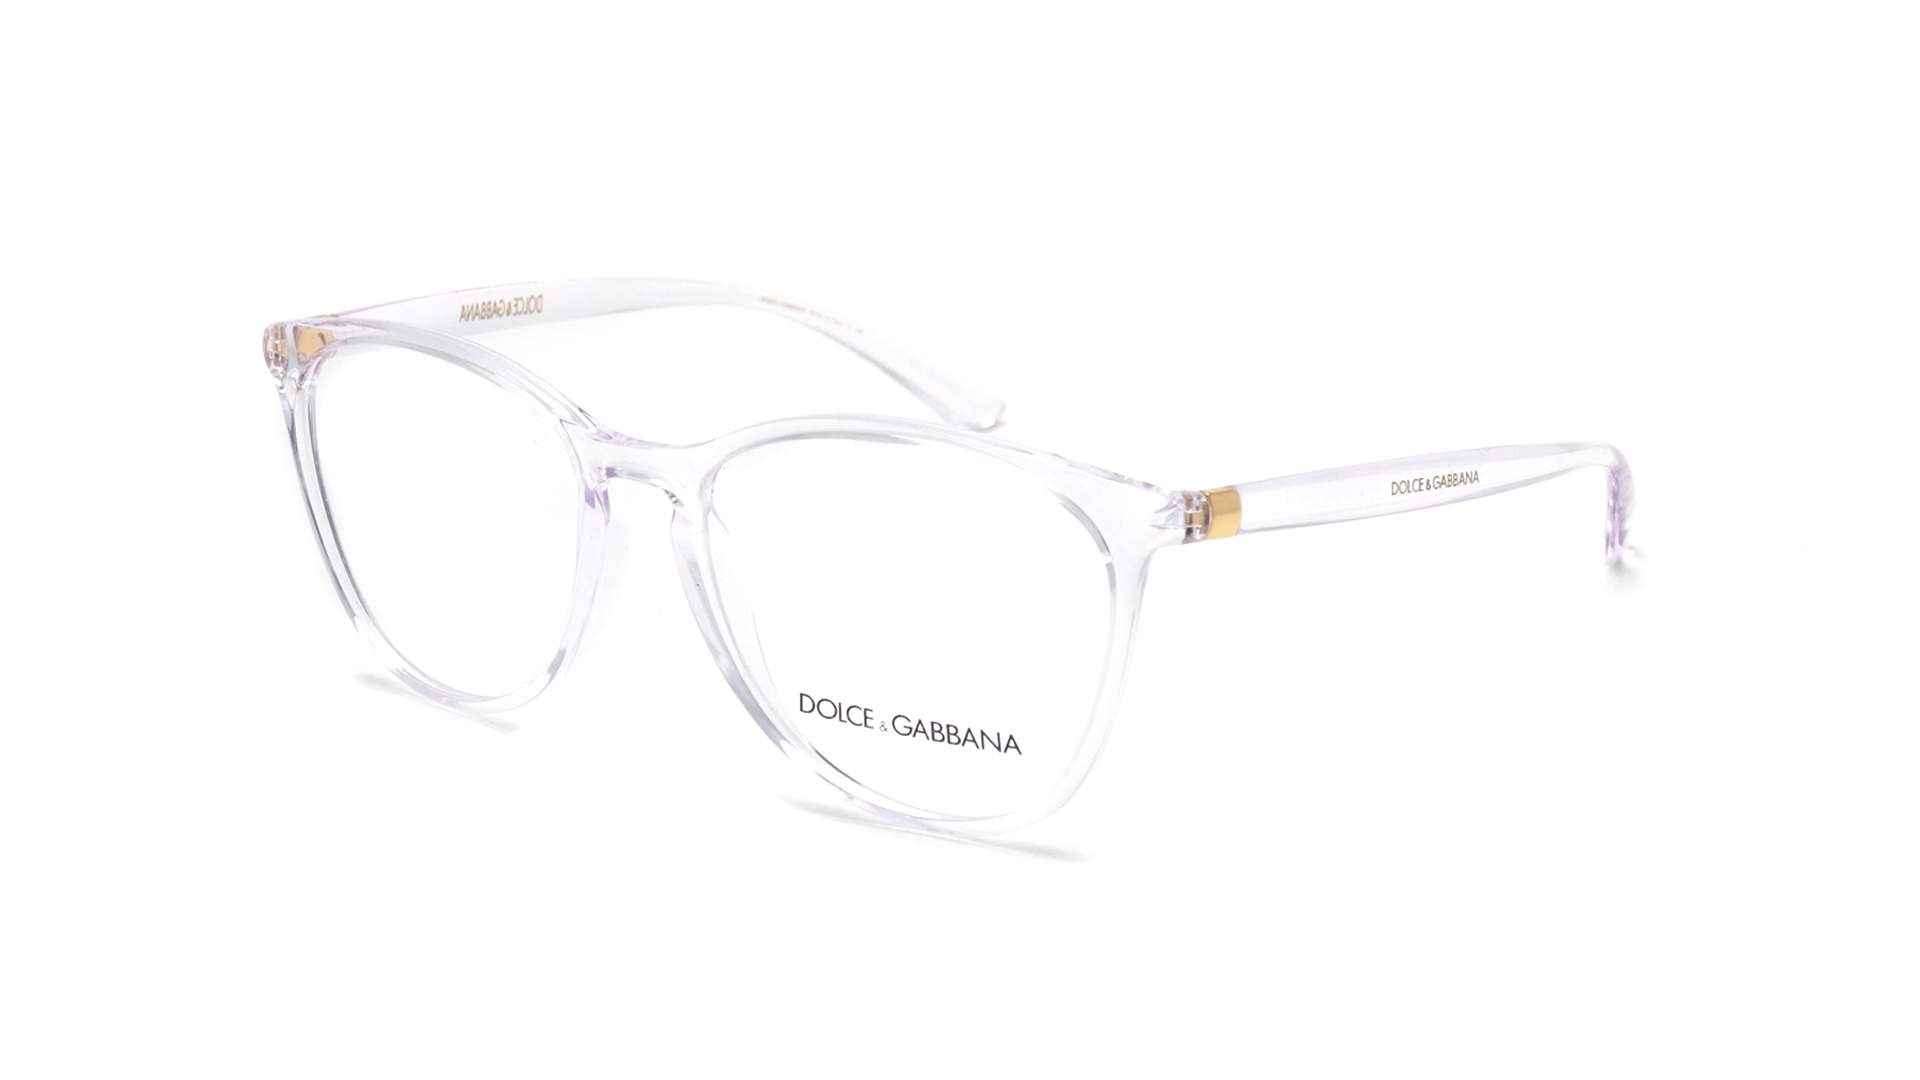 dolce gabbana eyewear optical